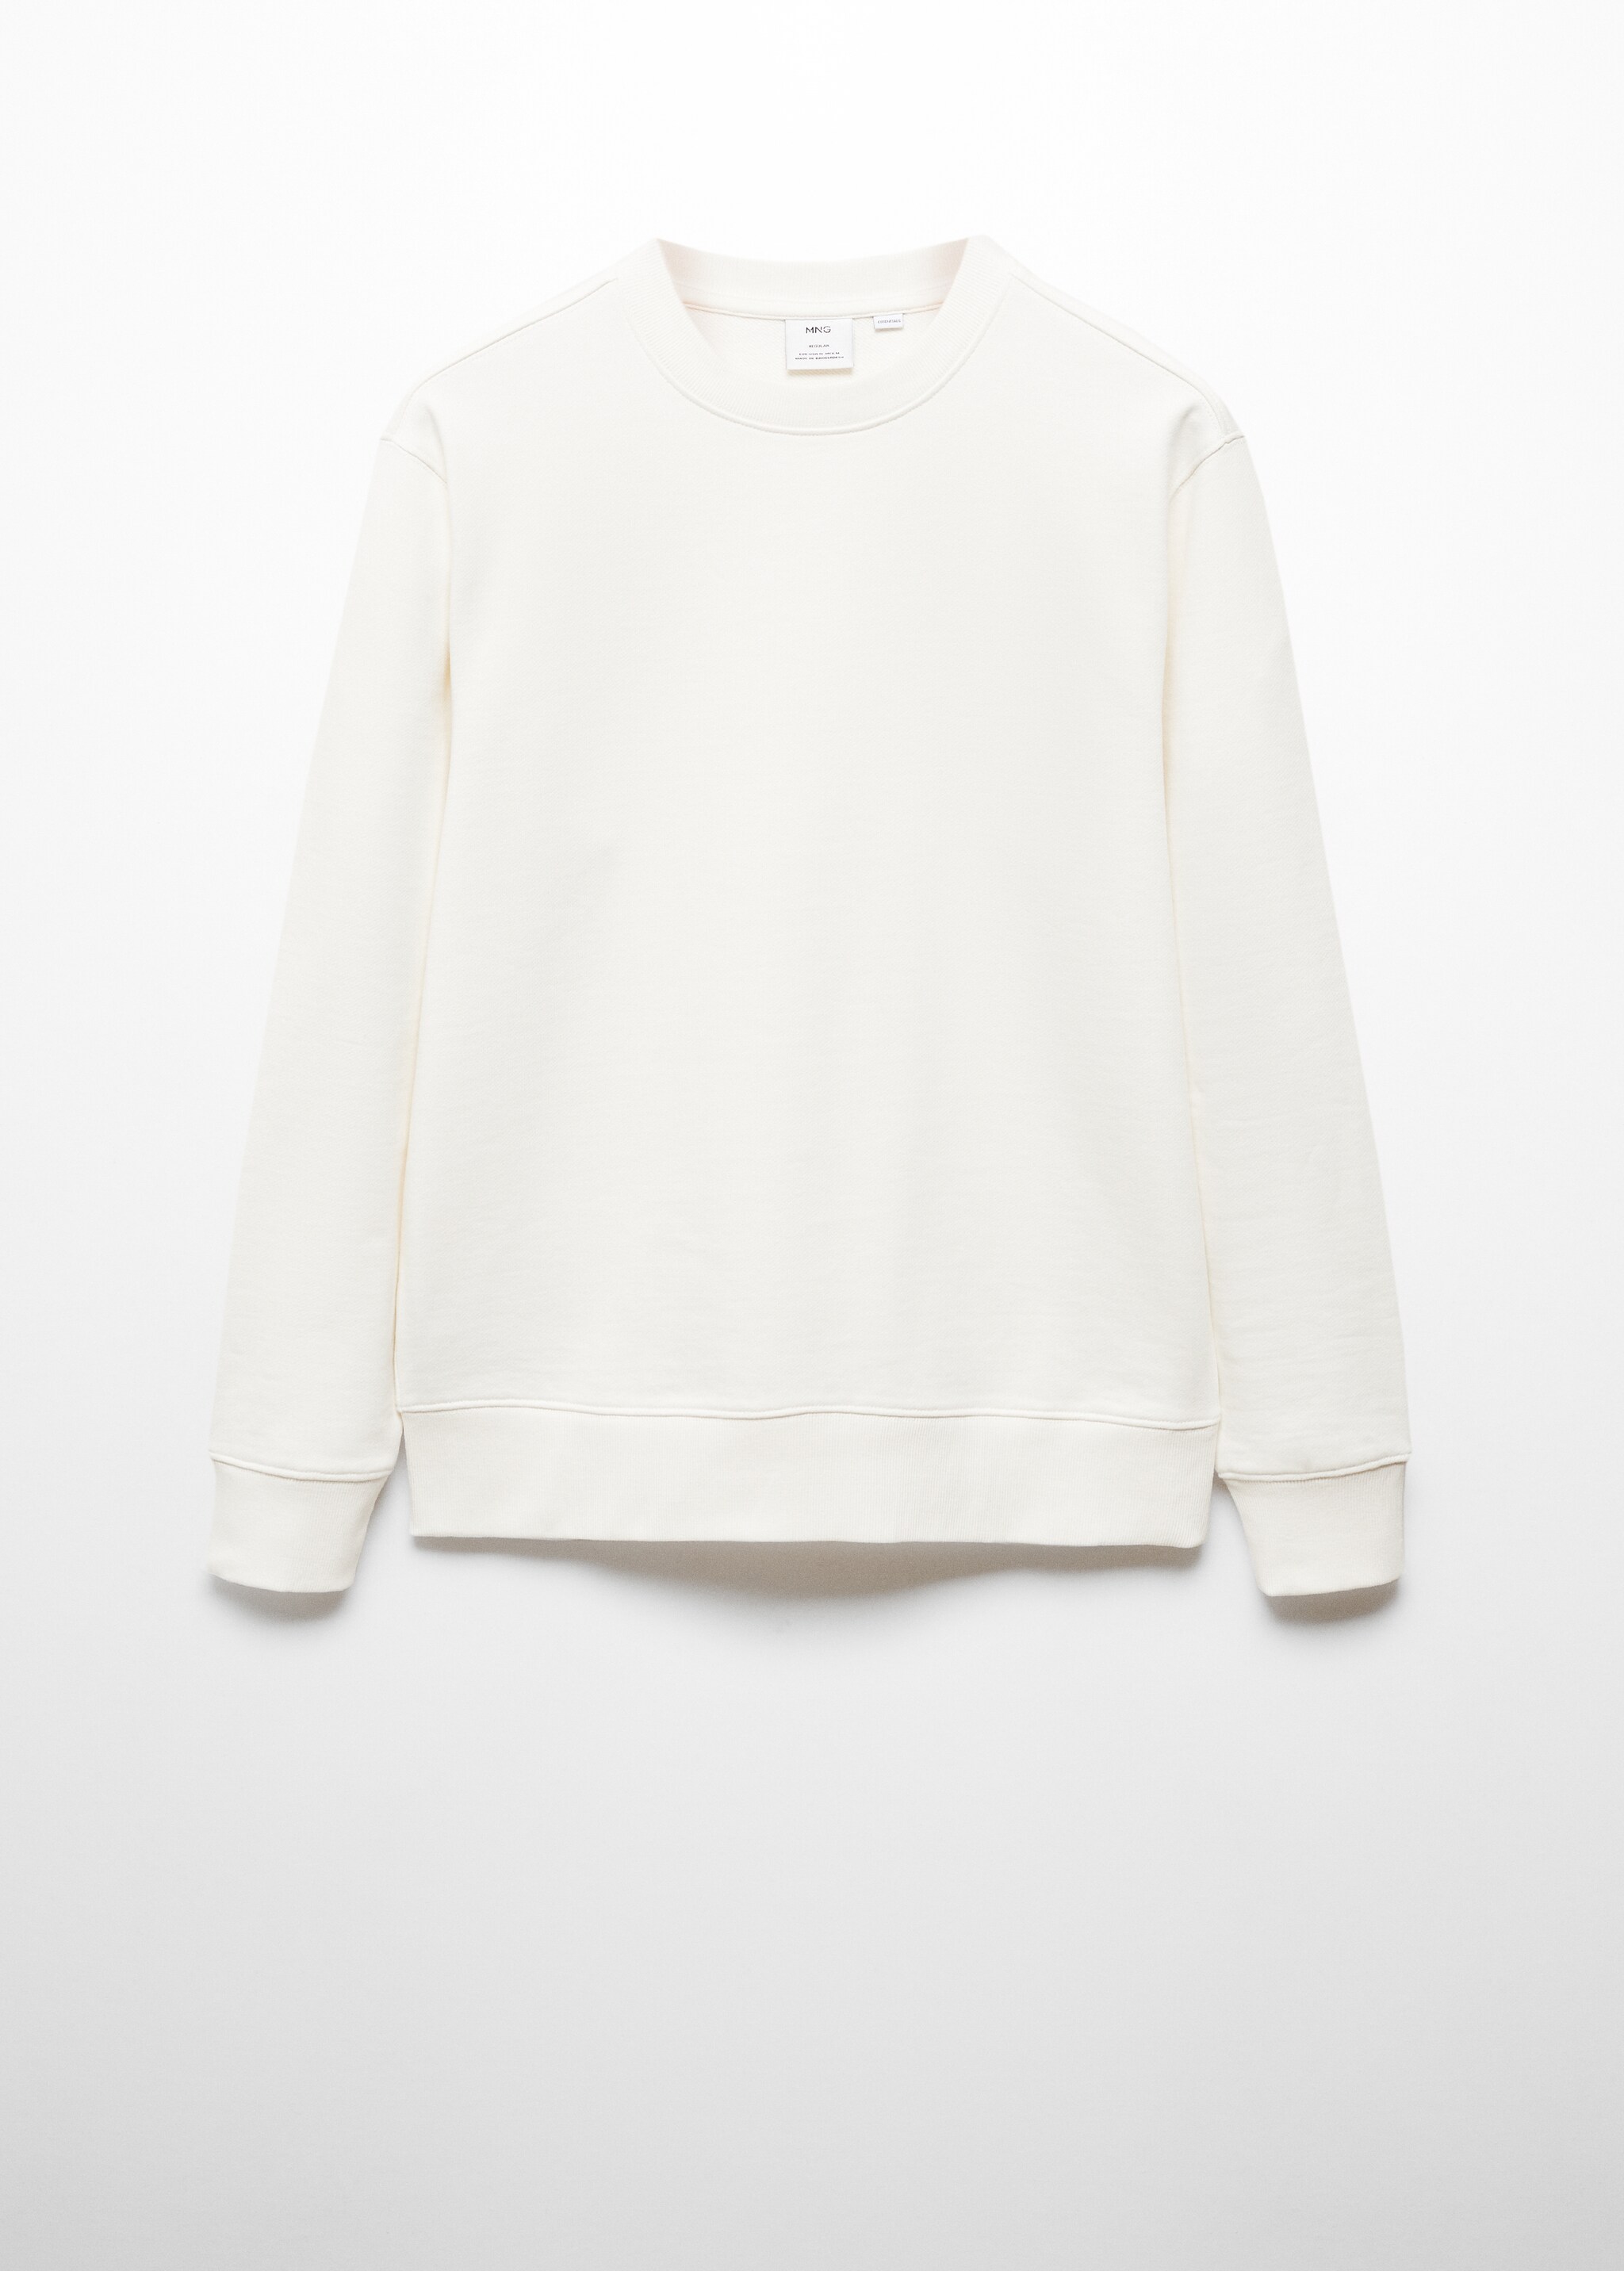 Sweatshirt básica de 100% algodão - Artigo sem modelo